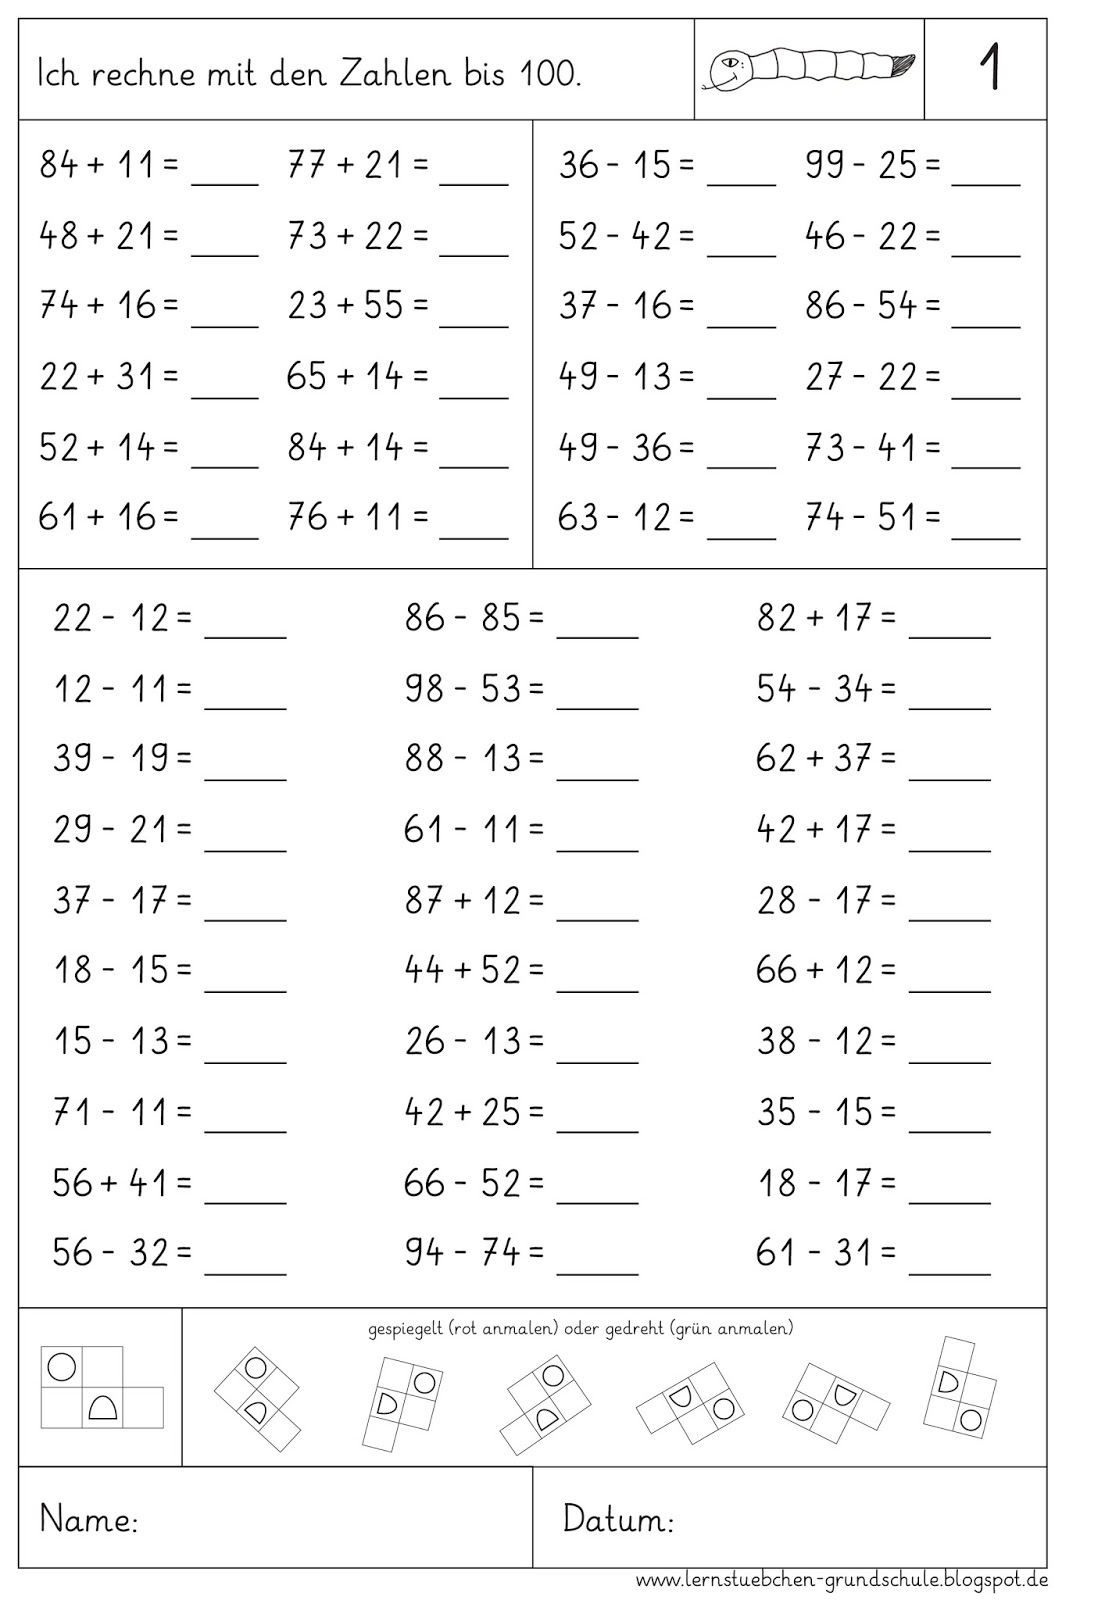 Lernstübchen: Arbeitsblätter Zur Wiederholung (4) ganzes Mathematik Klasse 4 Arbeitsblätter